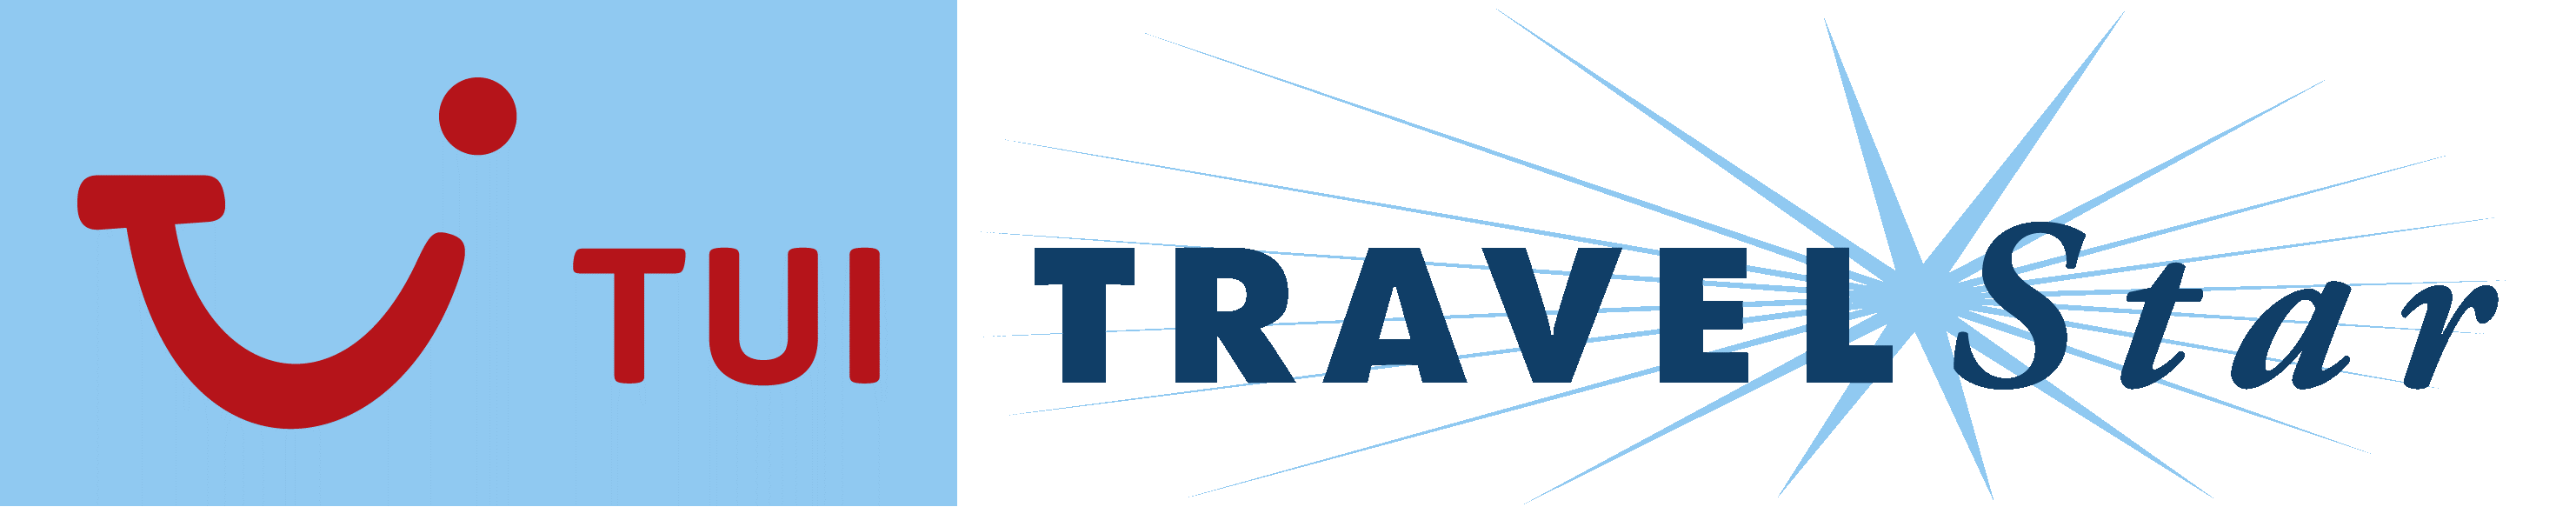 TTS-Newsletter logo